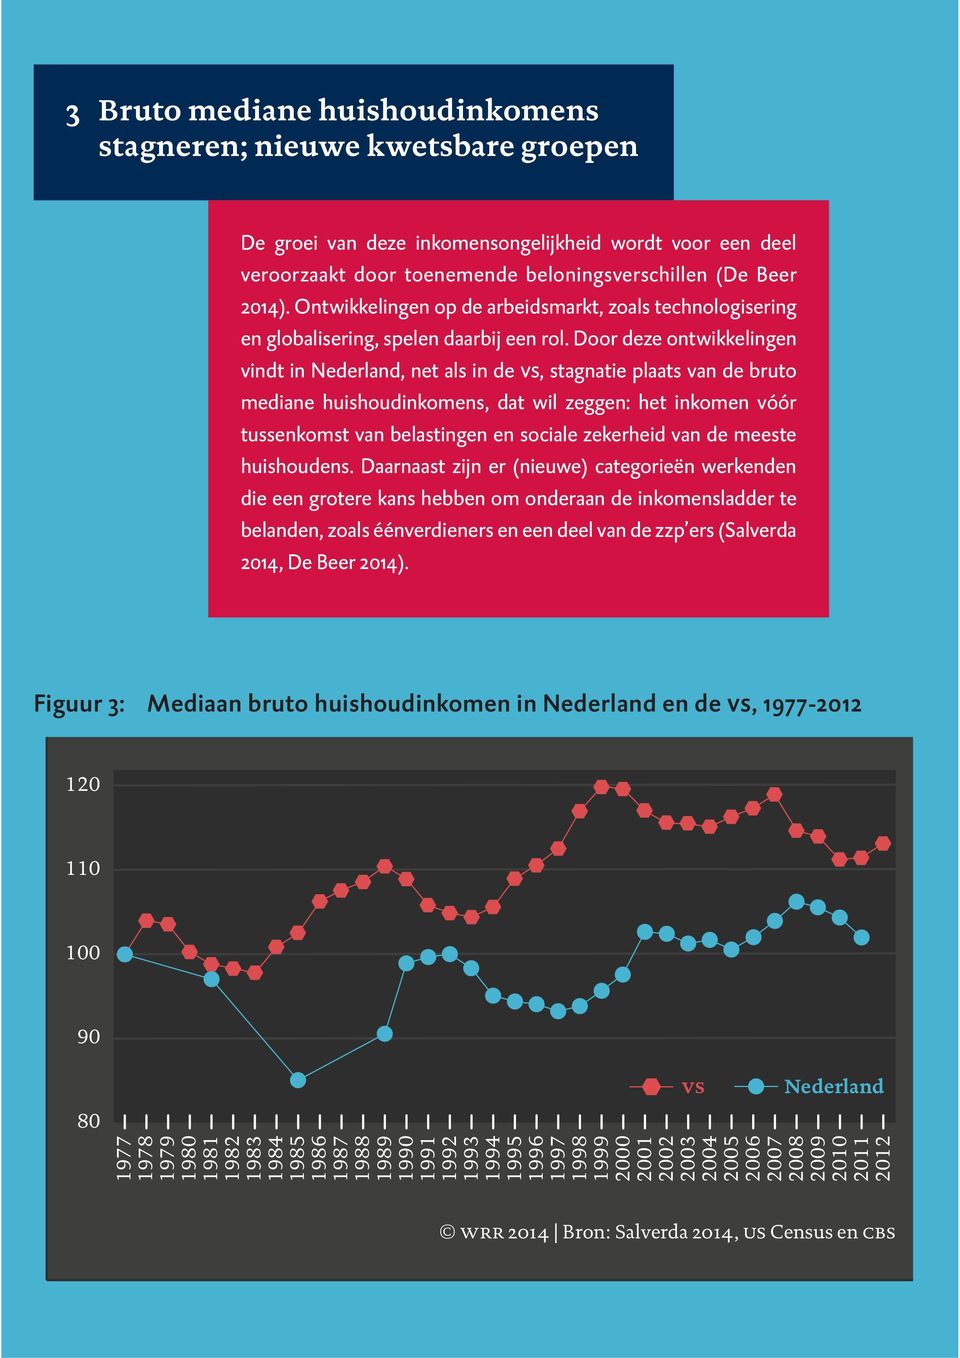 Door deze ontwikkelingen vindt in Nederland, net als in de vs, stagnatie plaats van de bruto mediane huishoudinkomens, dat wil zeggen: het inkomen vóór tussenkomst van belastingen en sociale